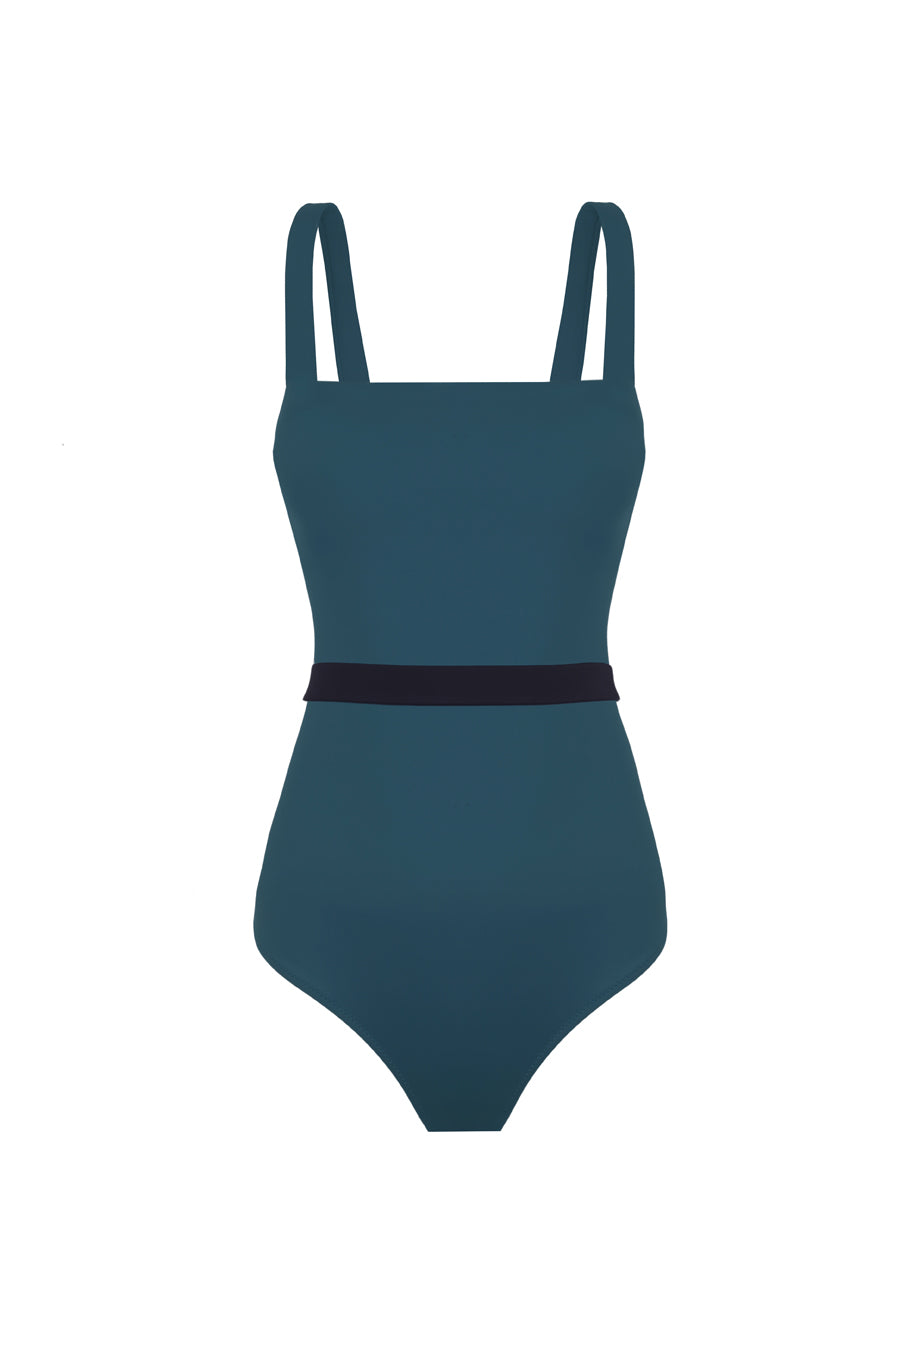 Valerie Green Swimsuit